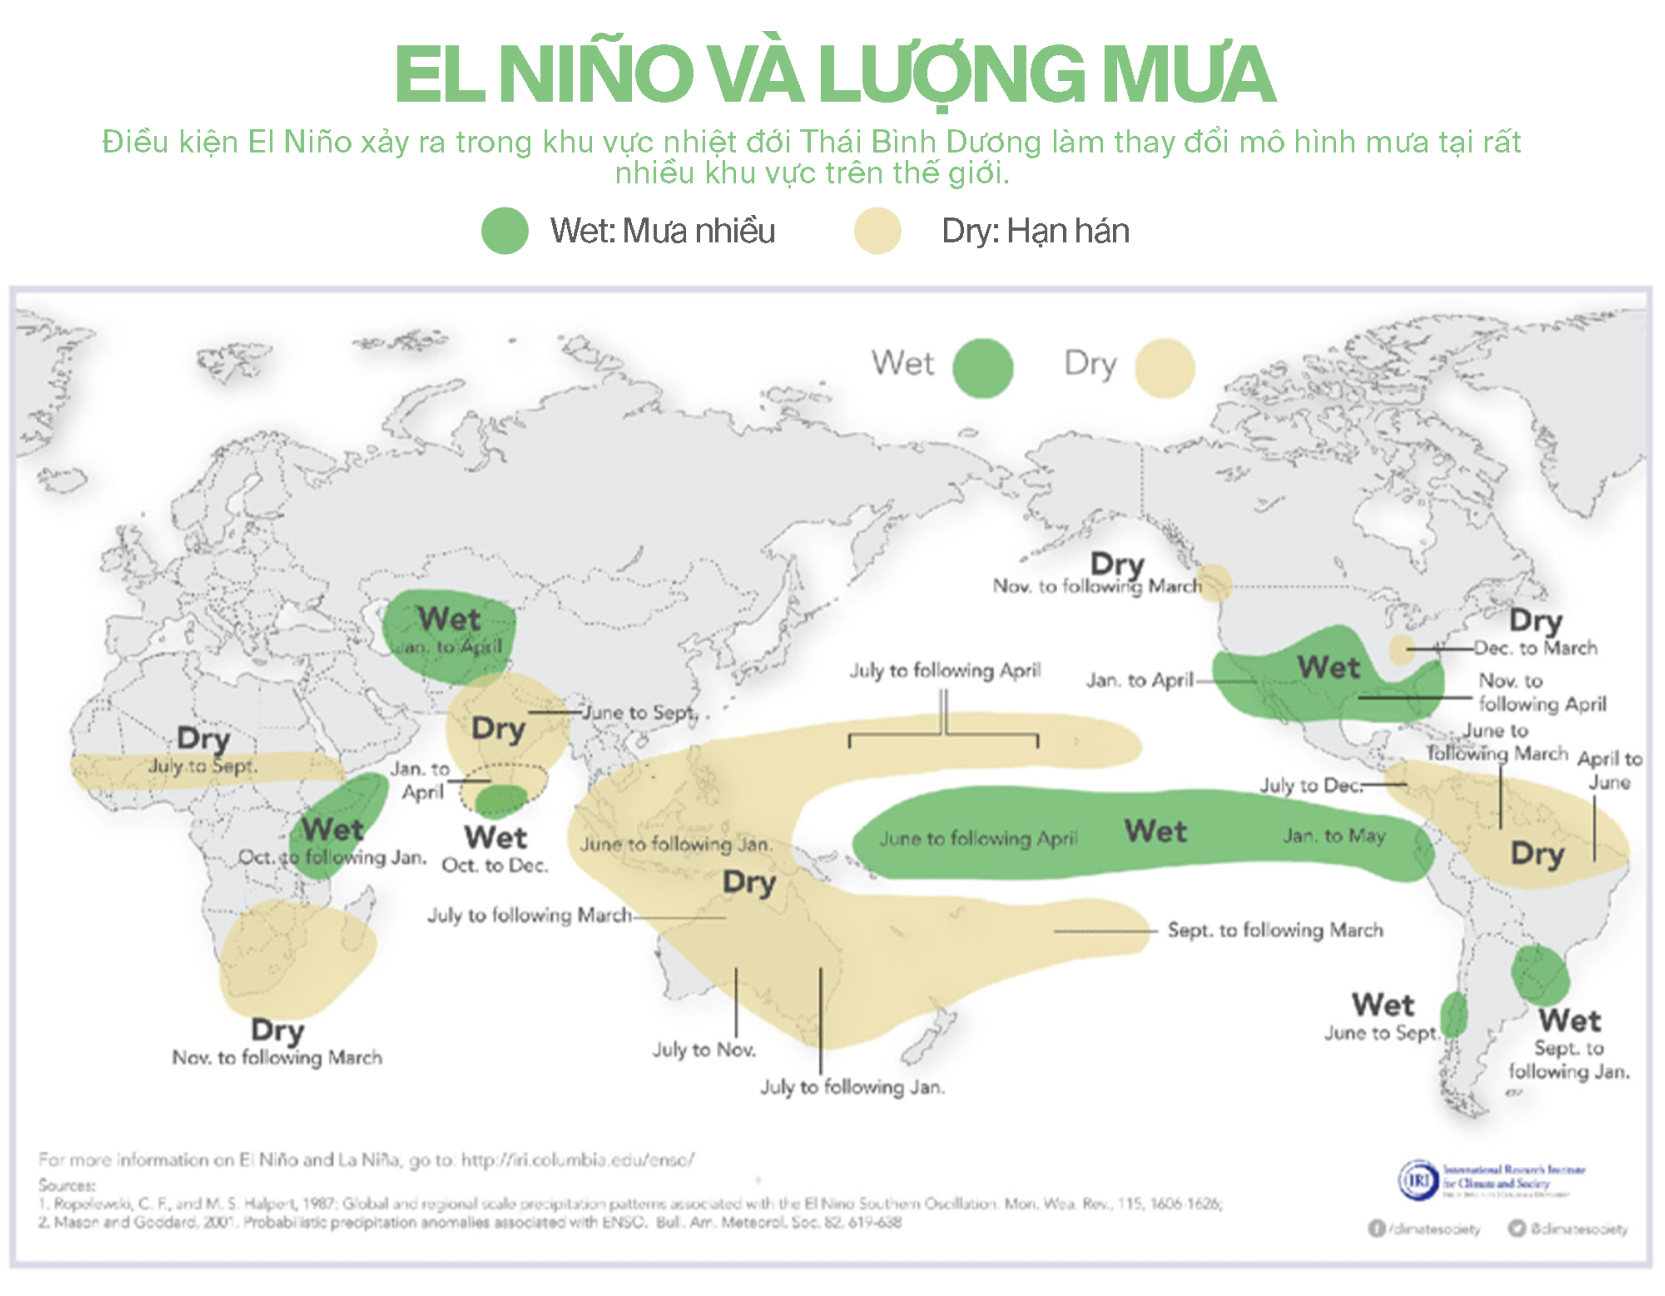 Những bí ẩn của El Niño: Nguồn gốc, lịch sử và hiệu ứng cánh bướm hai bên bờ Thái Bình Dương (kỳ 1) - Ảnh 3.